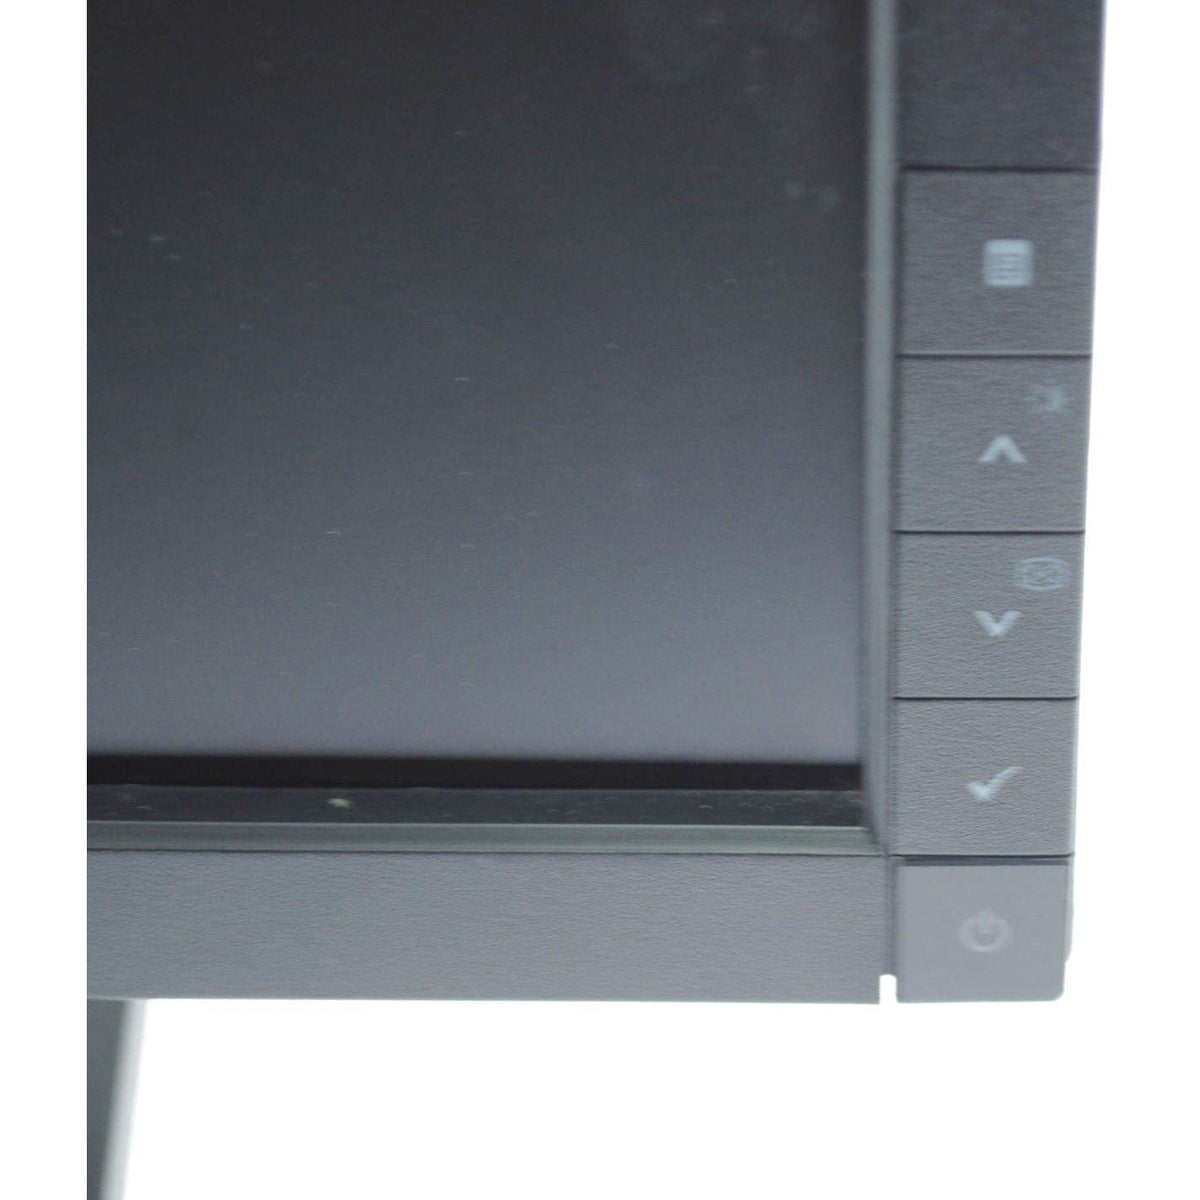 Monitor panorámico Dell E1709wc de 17 pulgadas, 1440 x 900, Vga